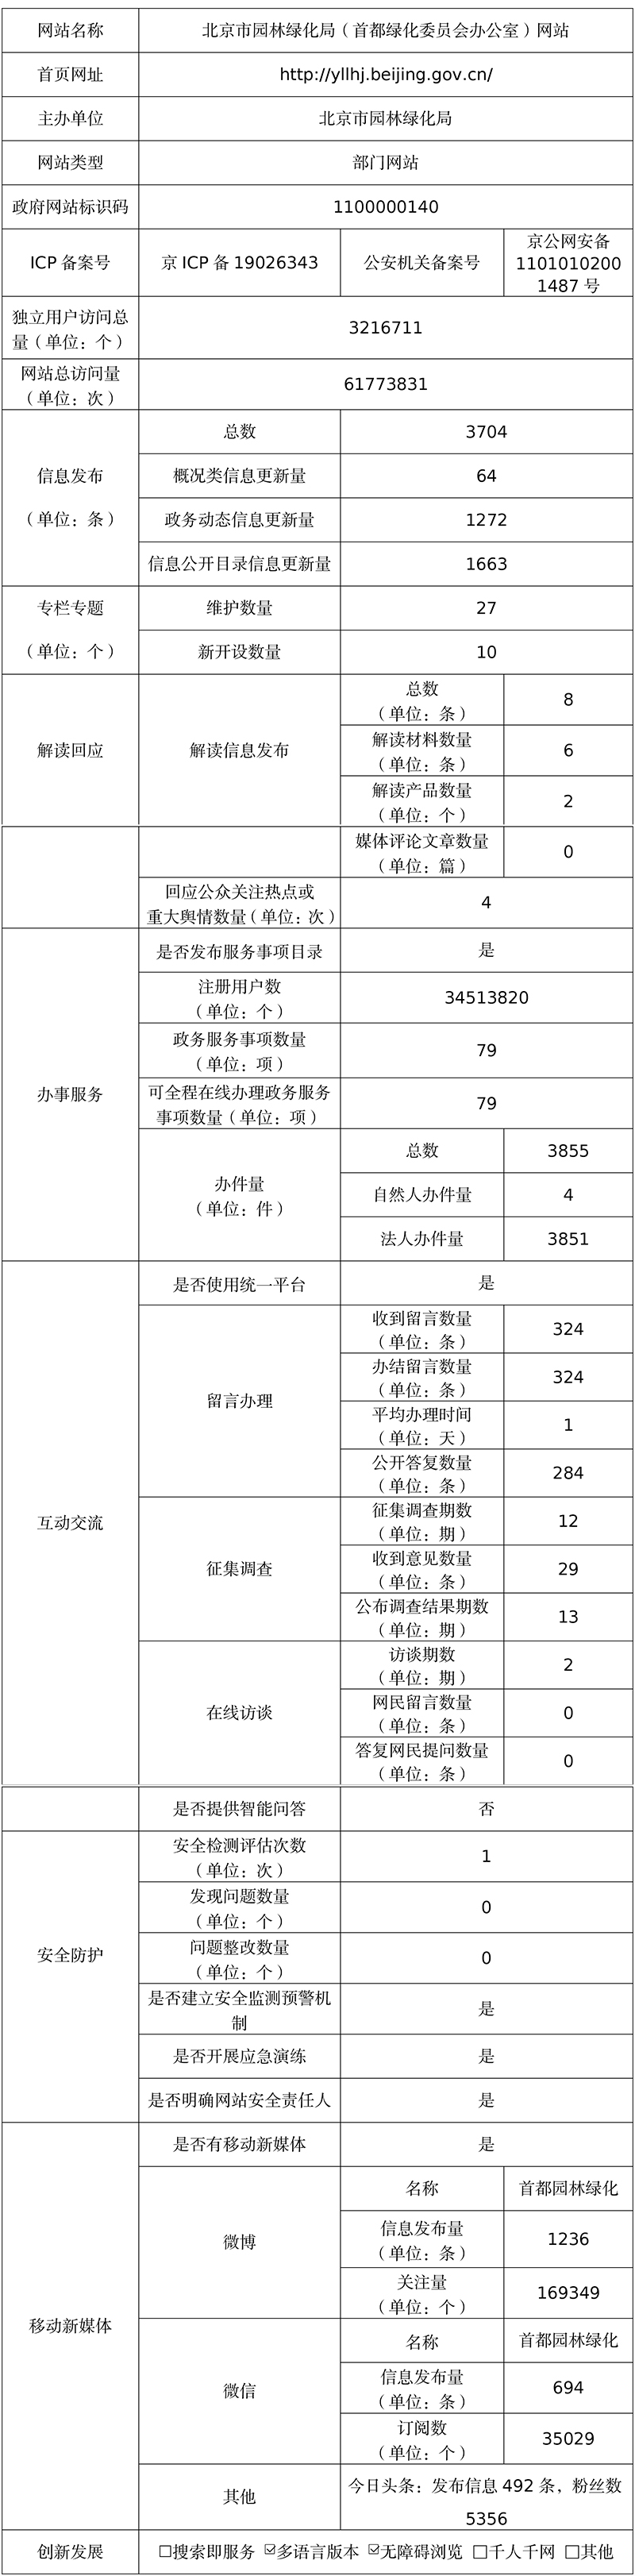 北京市園林綠化局2021年政府網站年度工作報表